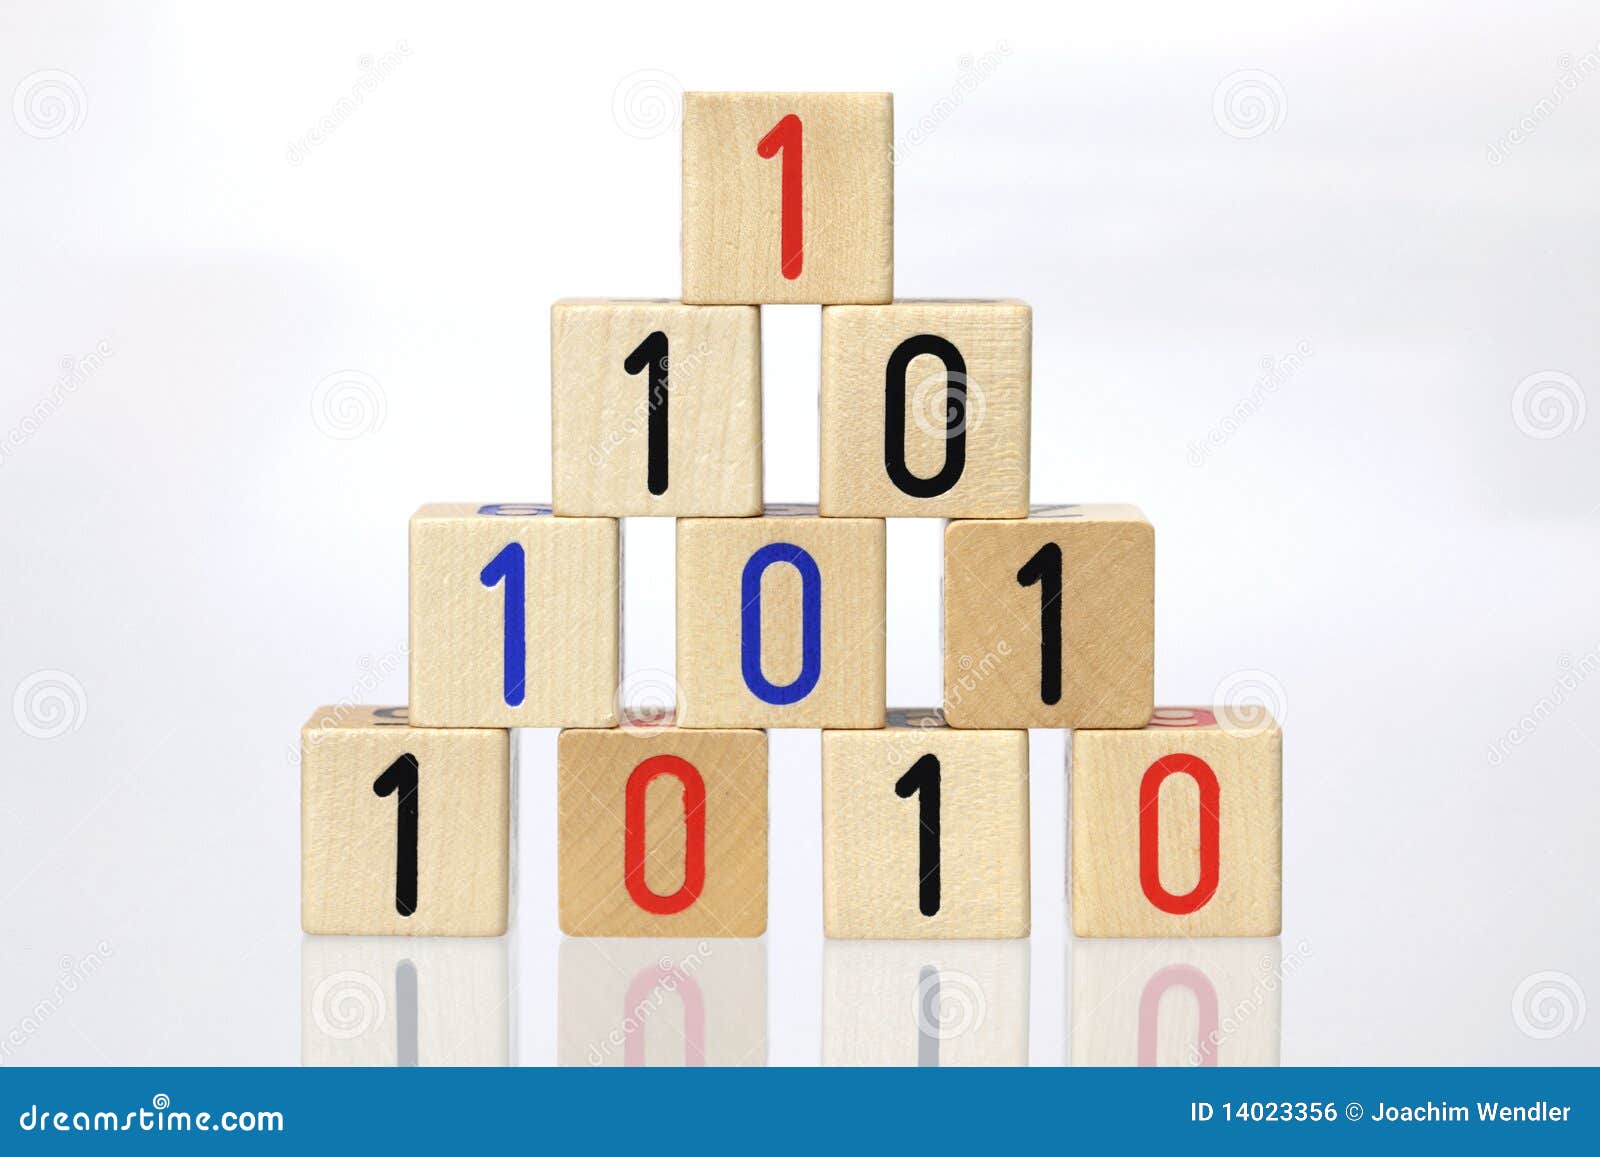 blocks with binary code